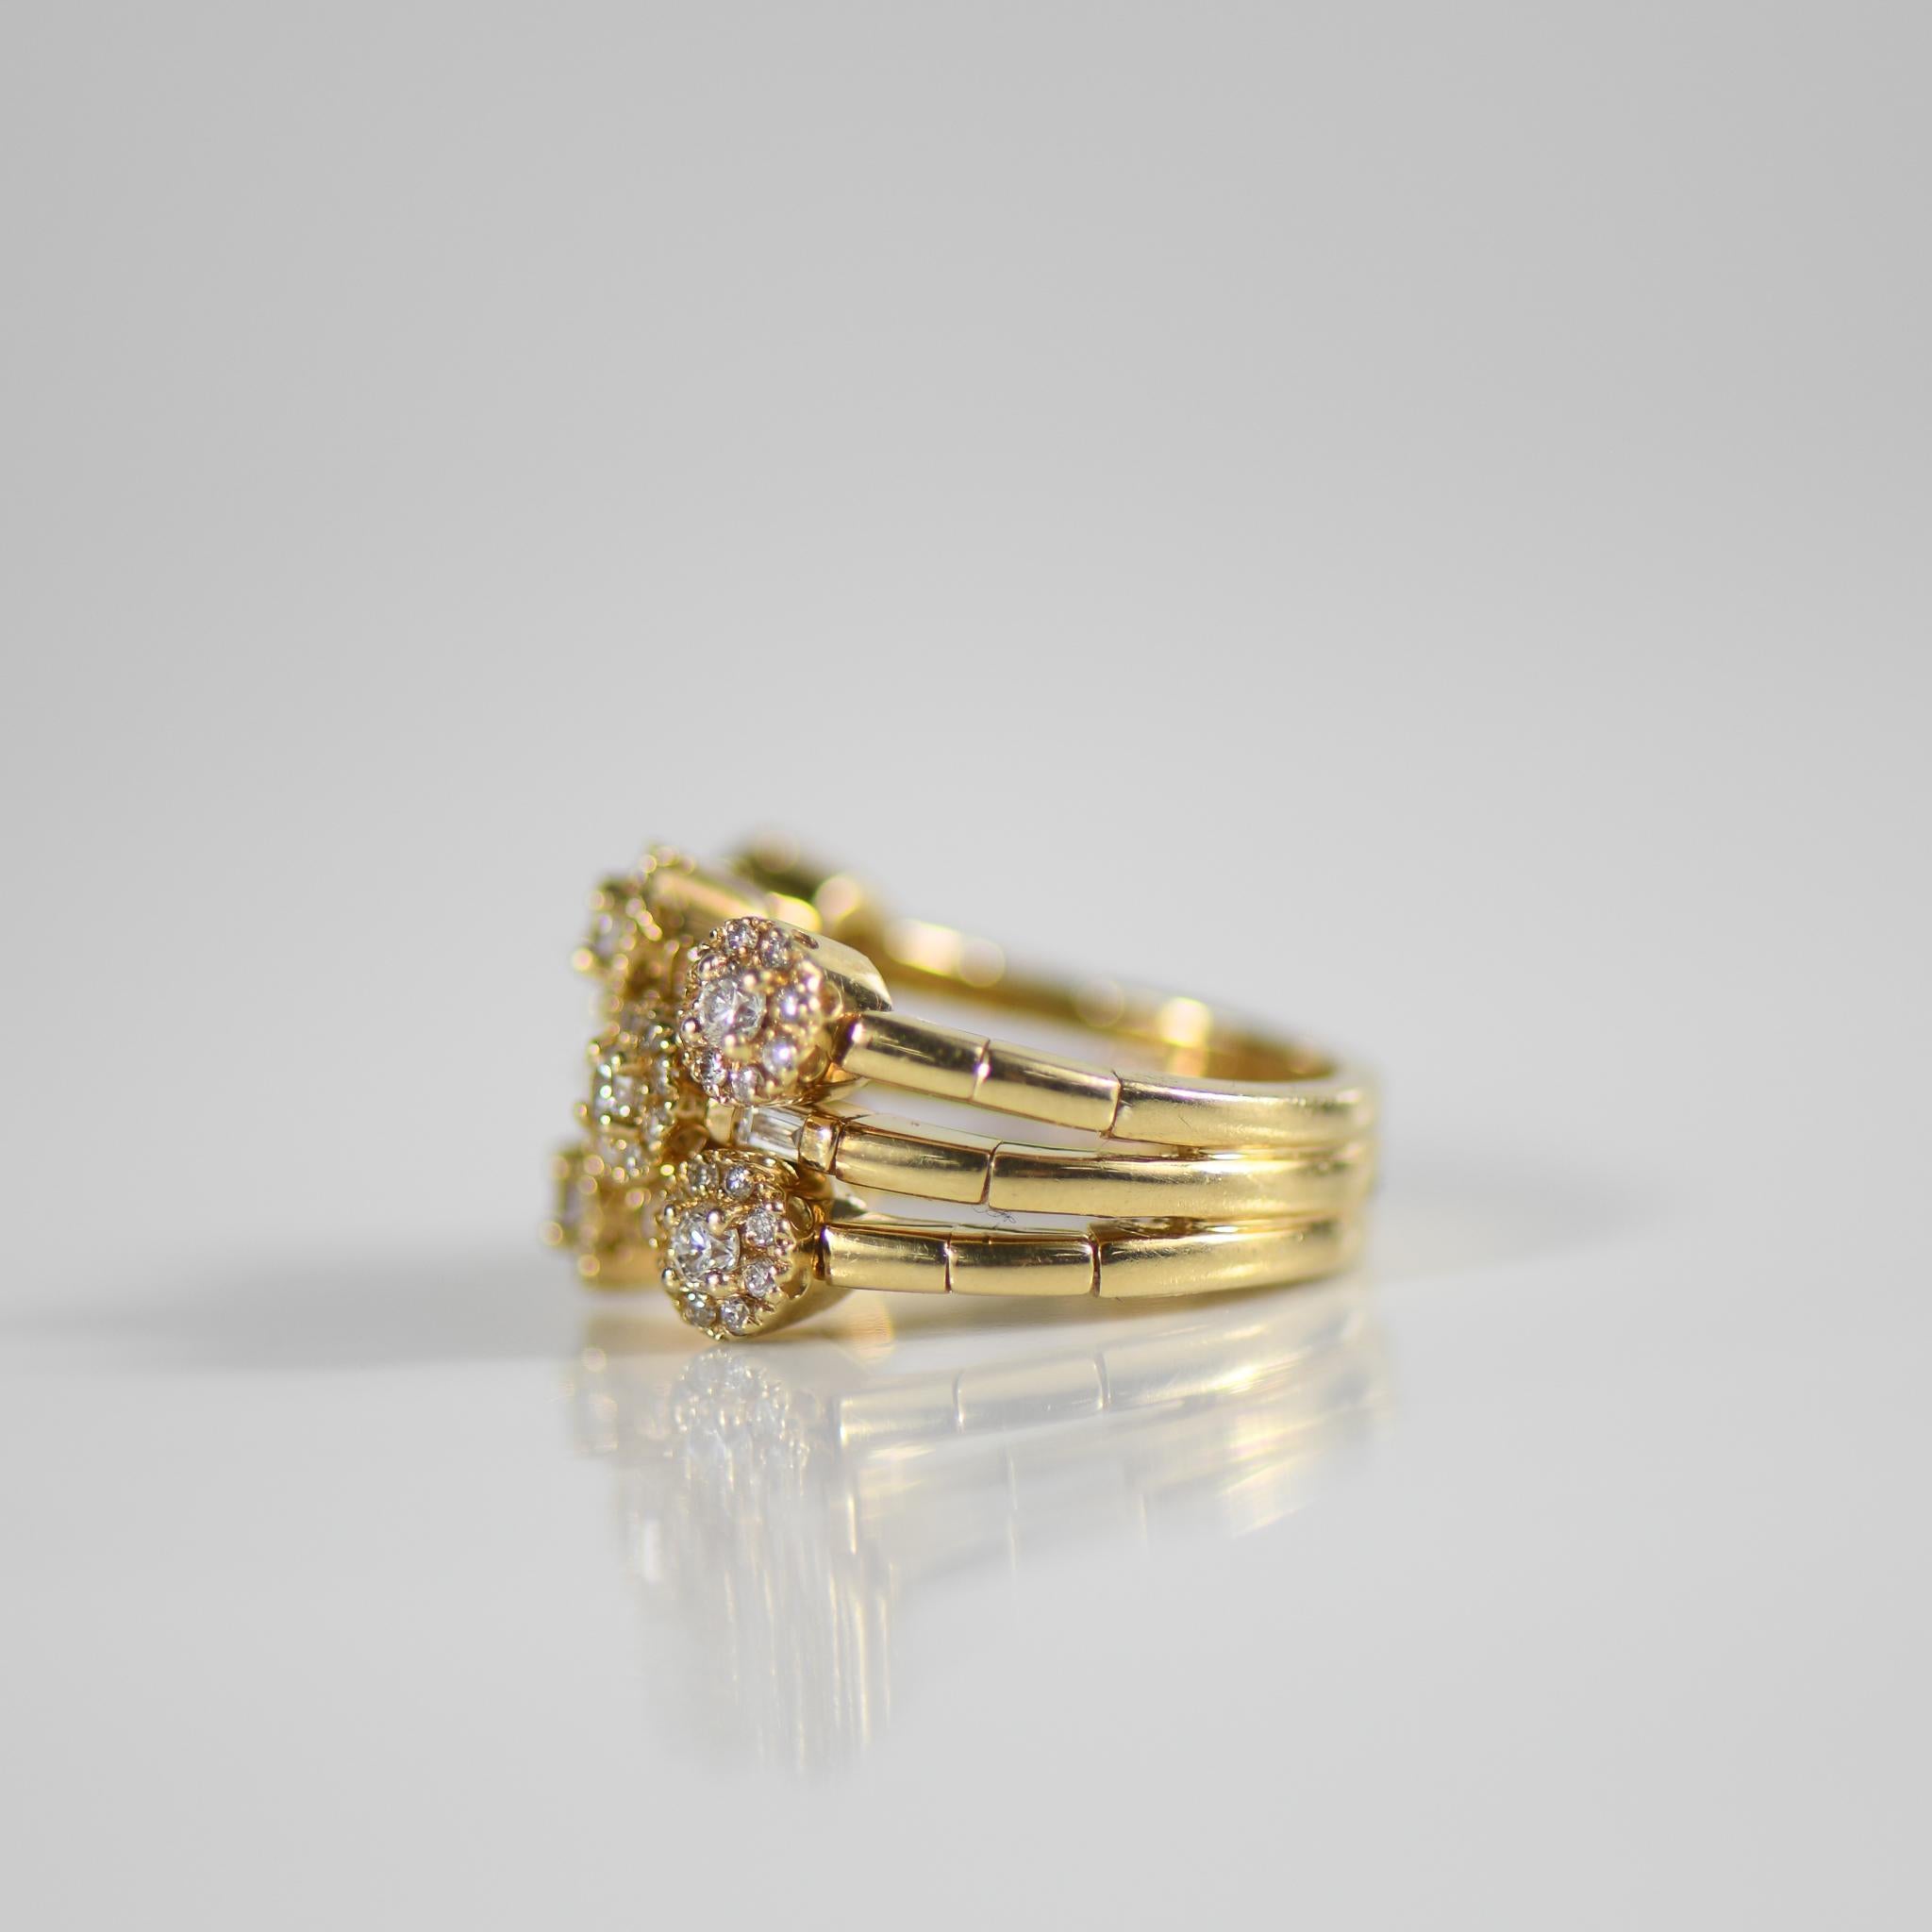 Erleben Sie die Kunst der spielerischen Eleganz mit dem Sonia B Branded Fidget Ring, einem einzigartigen und vielseitigen Schmuckstück, das Sie begeistern wird. Dieser Ring aus luxuriösem 14-karätigem Gelbgold verfügt über ein bewegliches,